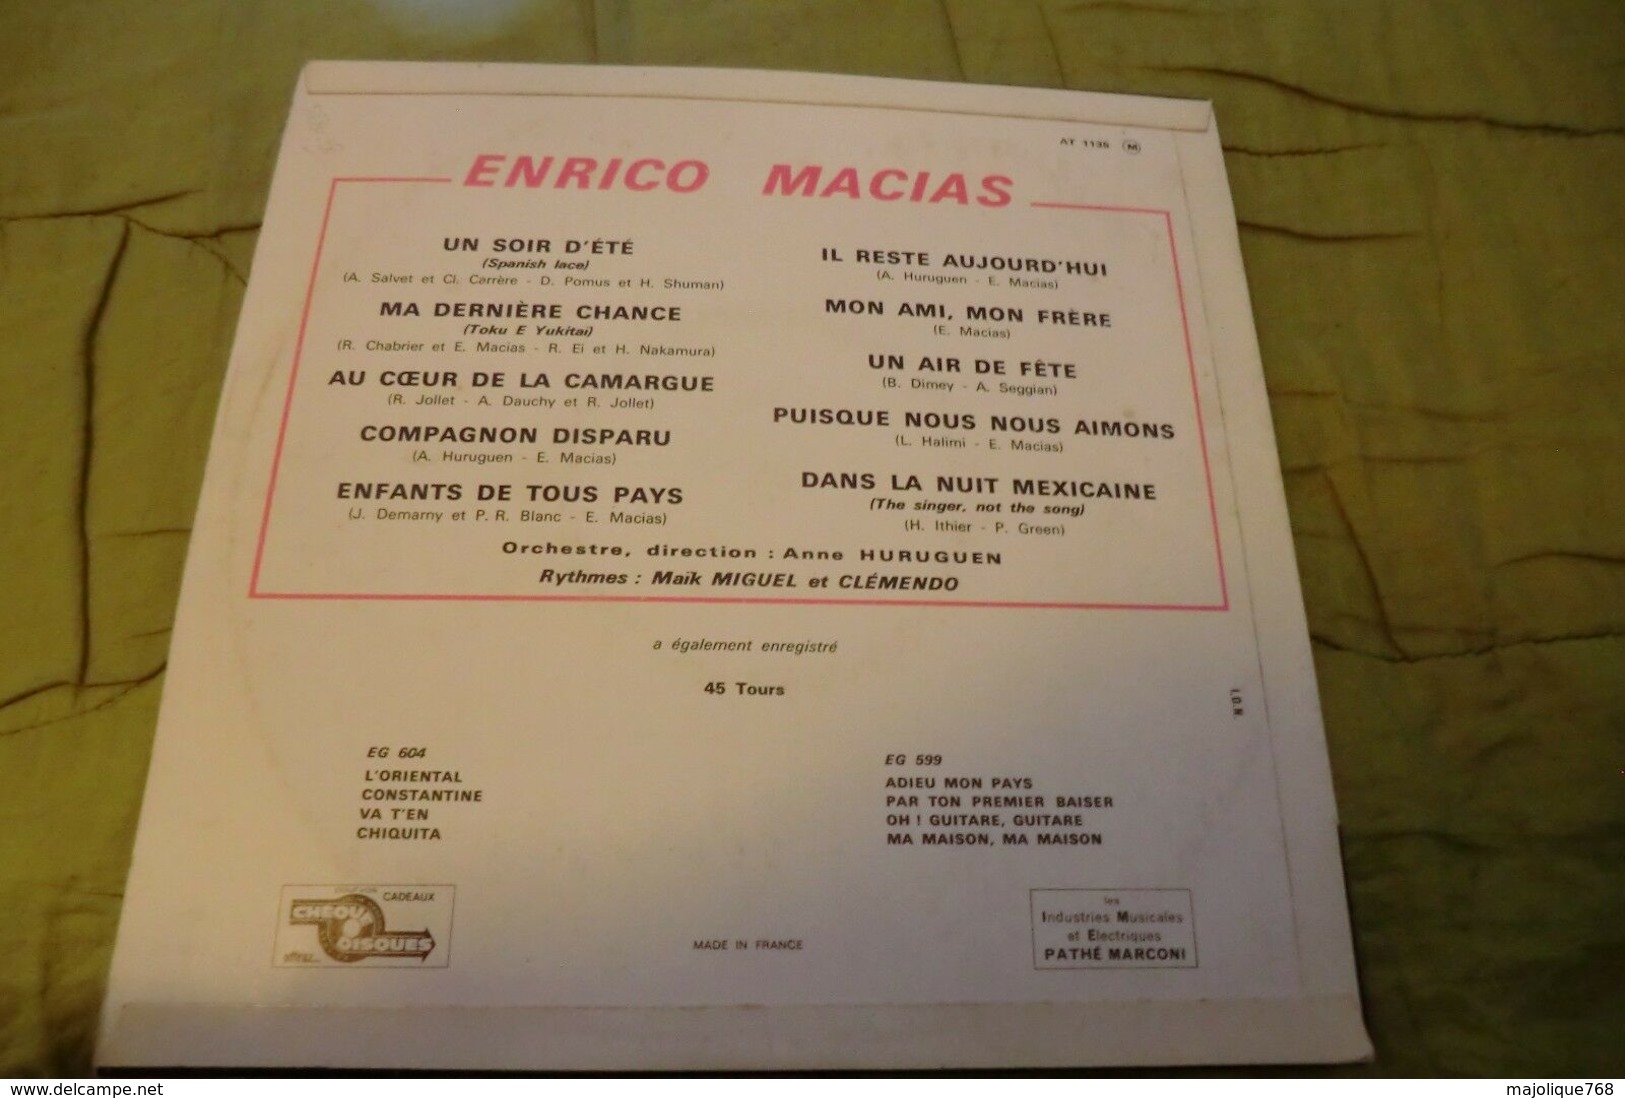 Disque De Enrico Macias - Enfants De Tous Pays - Pathé Marconi - AT 1135 - 25 Cm - 1962 - Formats Spéciaux